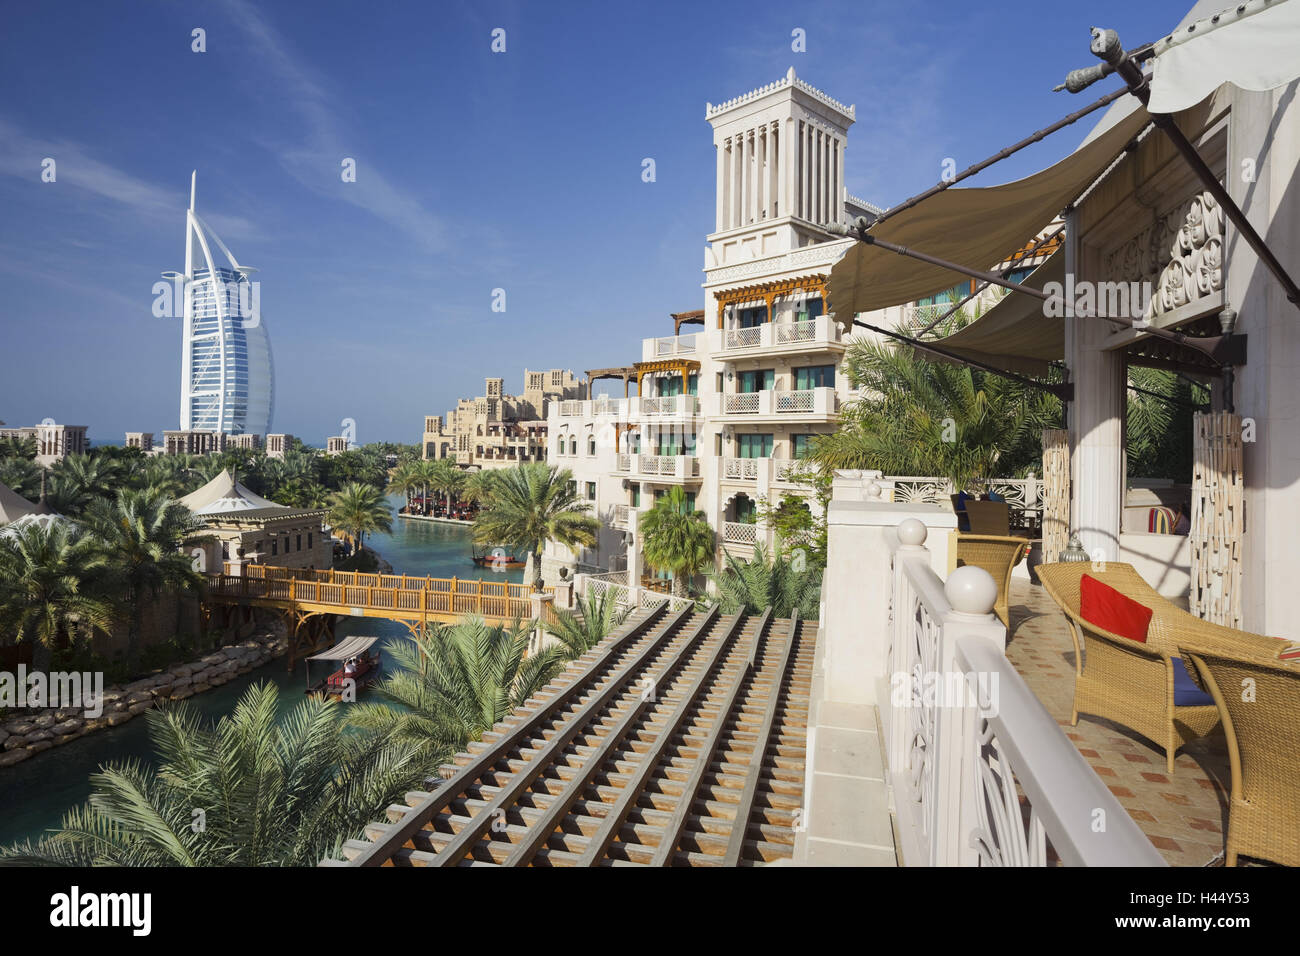 Emirats Arabes Unis, Dubai, Al Qasr Hotel, Madinat Jumeirah, Burj Al Arab, Banque D'Images